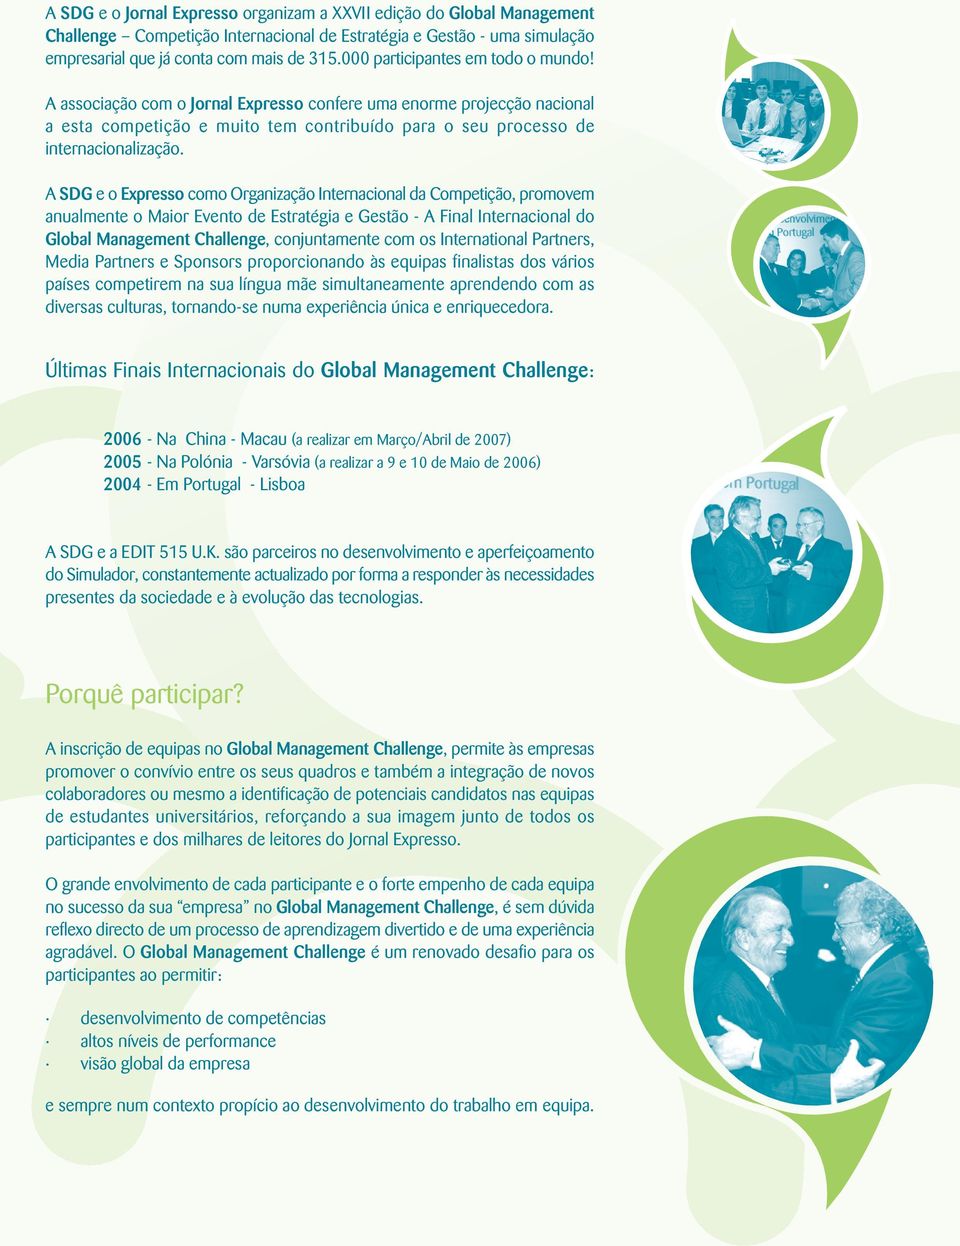 A SDG e o Expresso como Organização Internacional da Competição, promovem anualmente o Maior Evento de Estratégia e Gestão - A Final Internacional do Global Management Challenge, conjuntamente com os